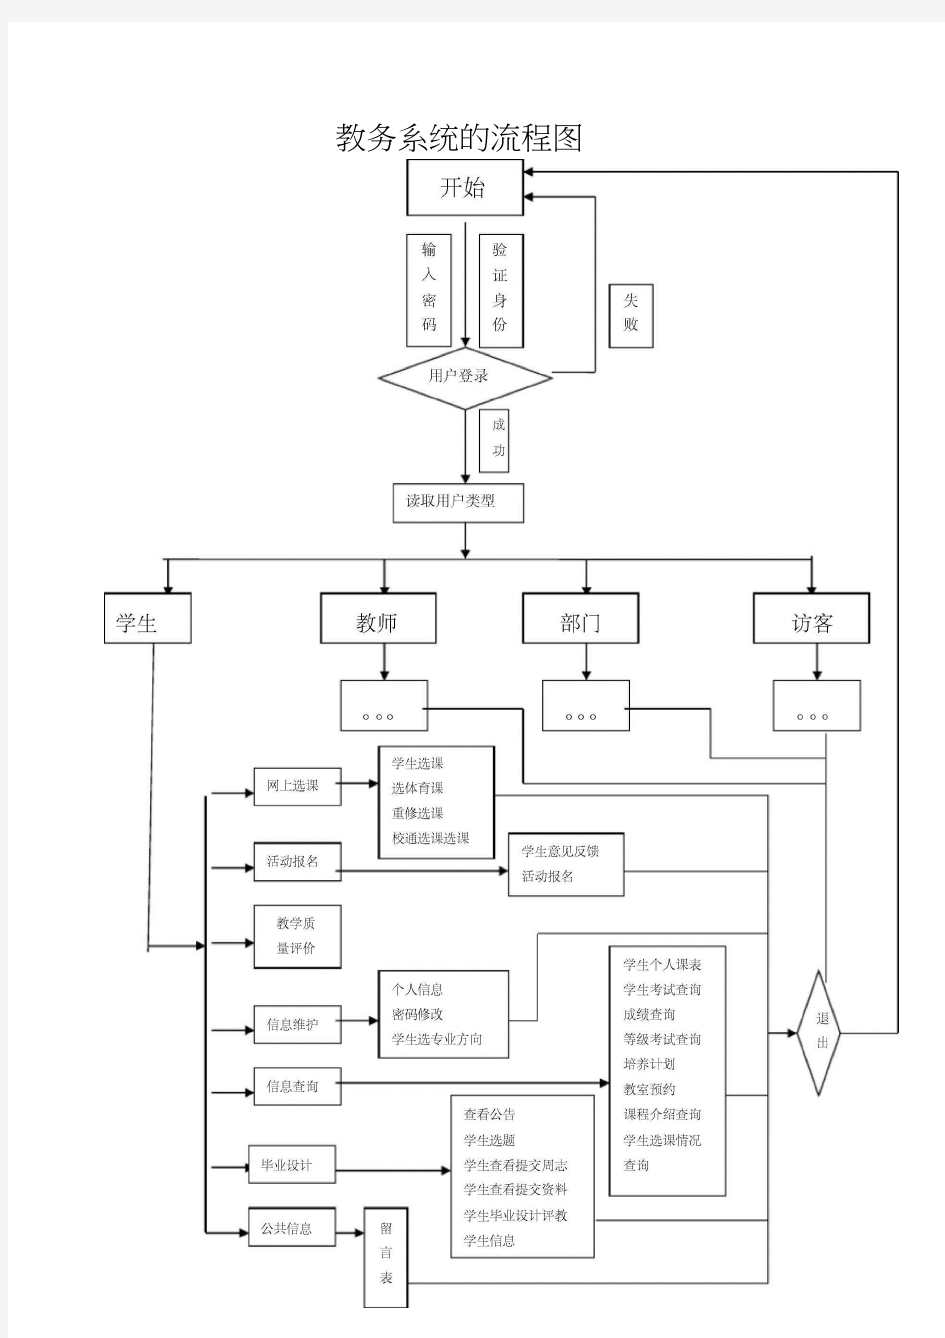 教务系统结构流程图